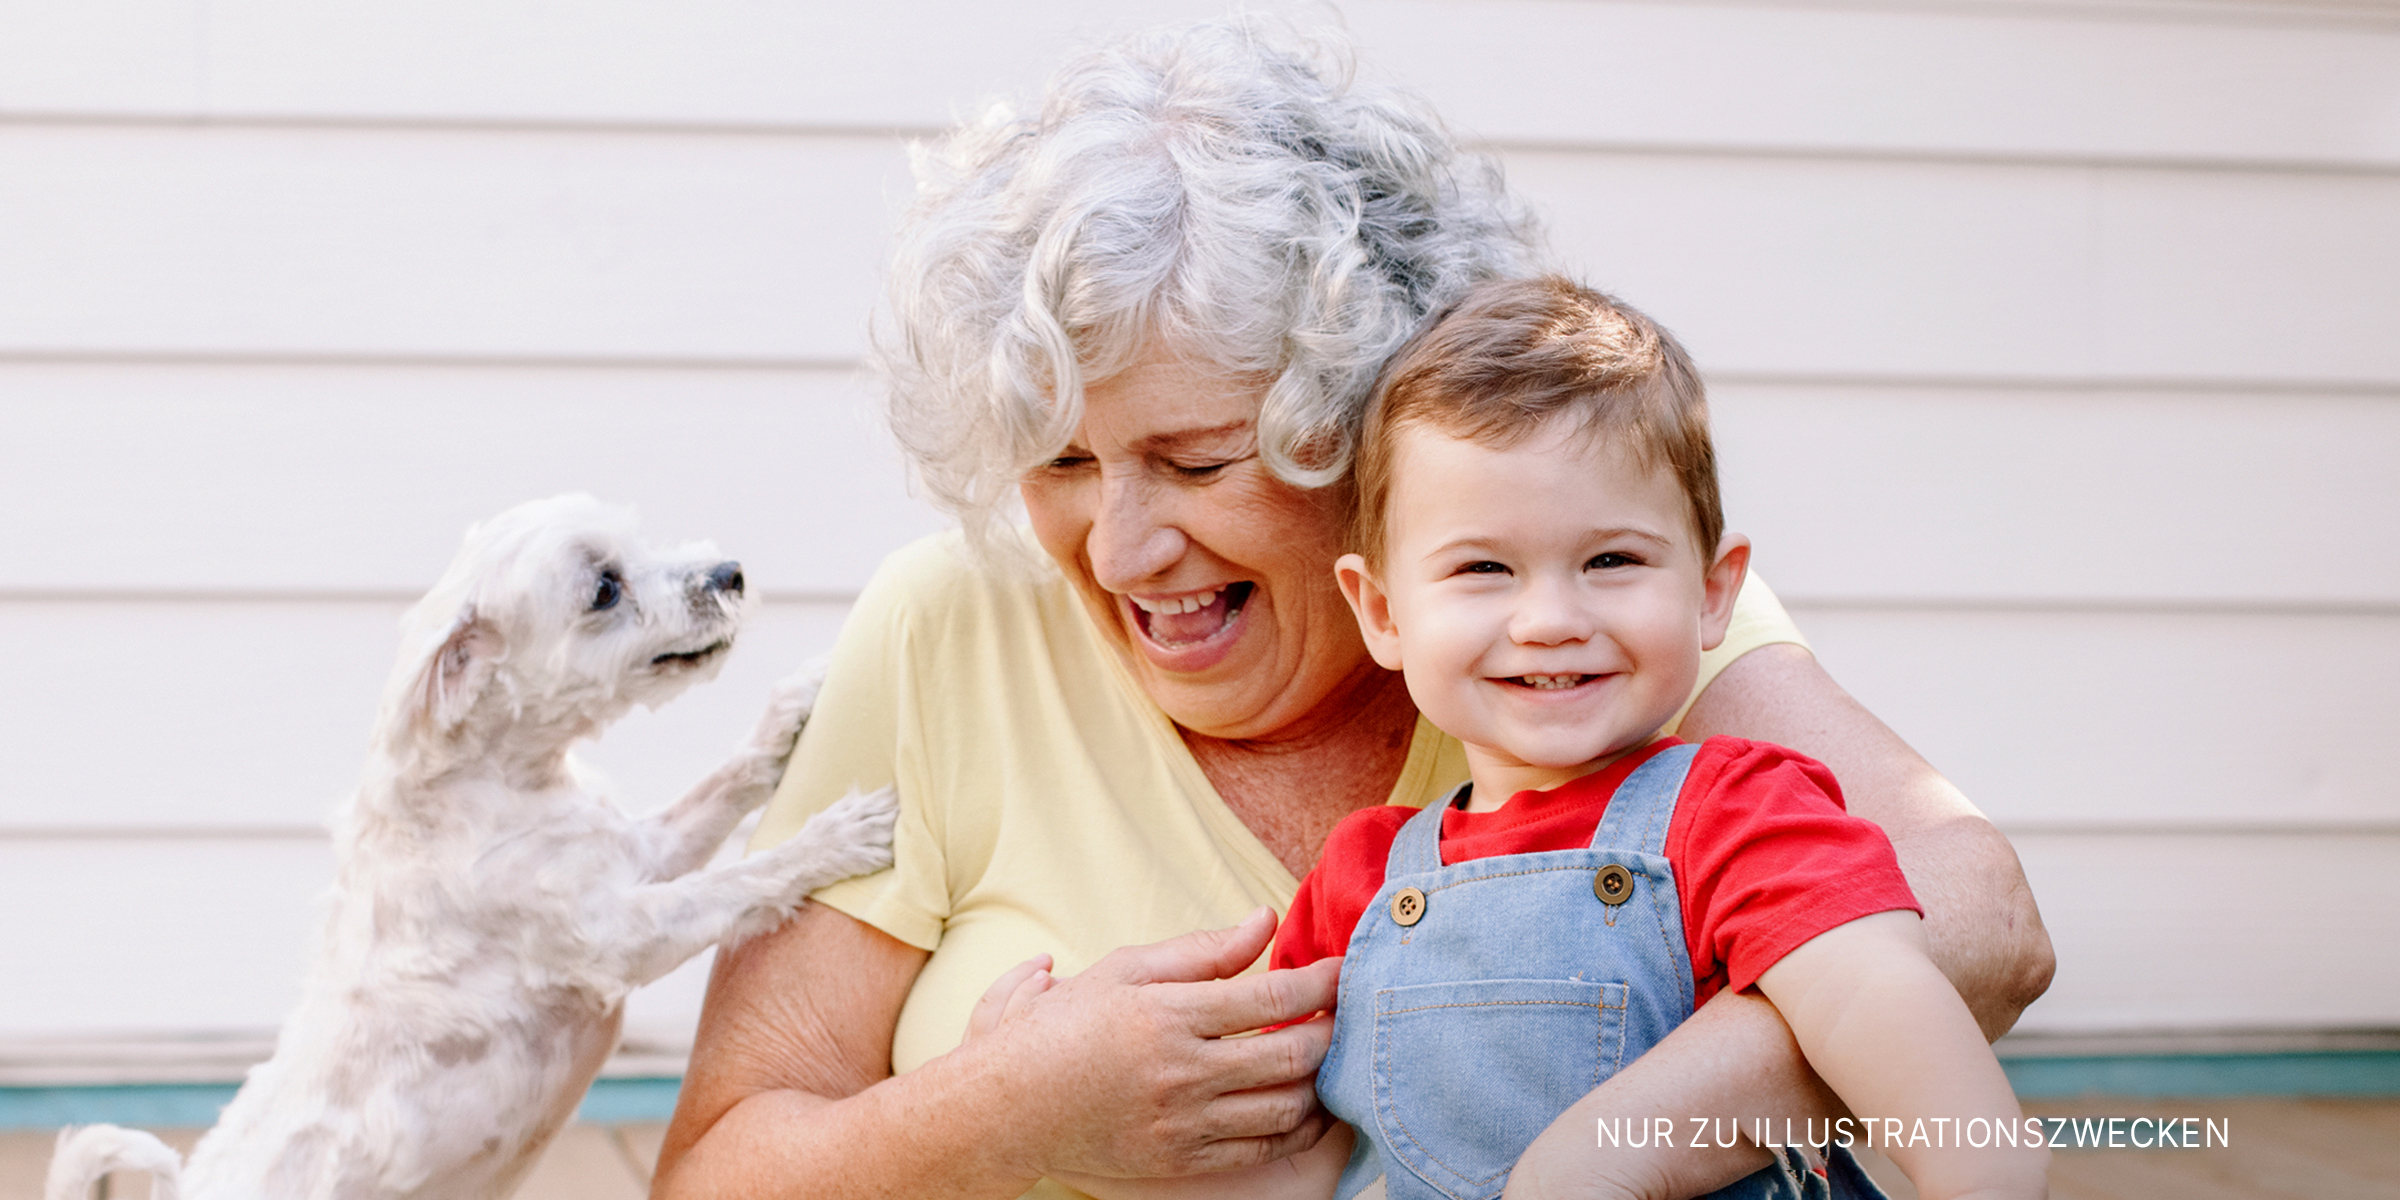 Eine Großmutter und ihr Enkelkind mit einem Welpen | Quelle: Shutterstock